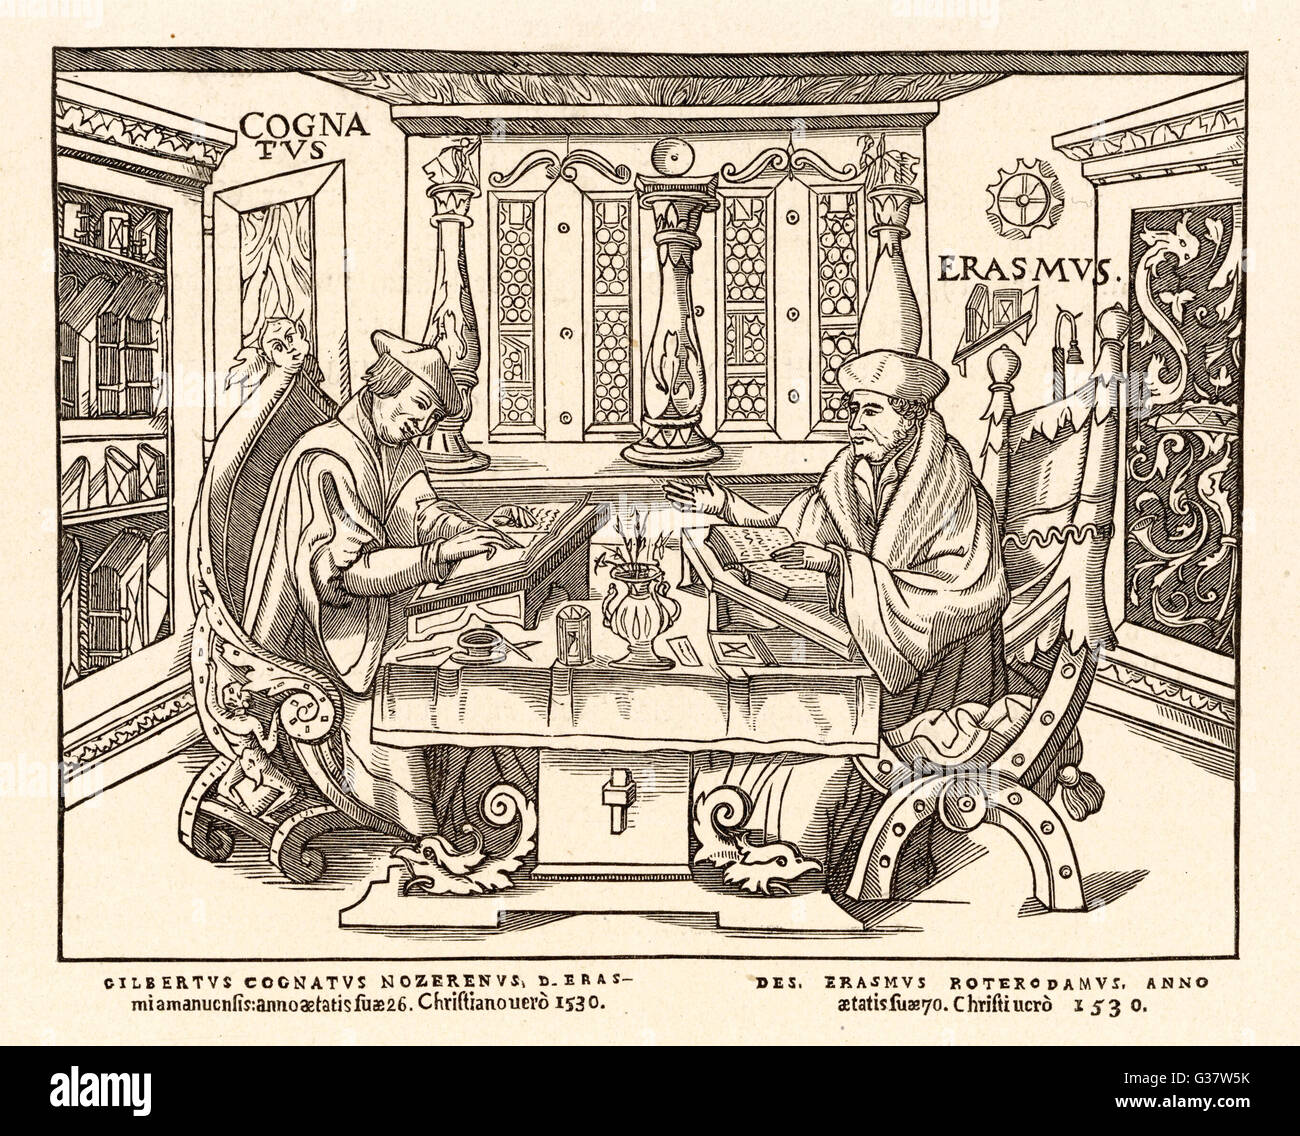 Desiderio ERASMUS umanista olandese con il suo collega Gilbertus Cognatus data: 1466 - 1536 Foto Stock